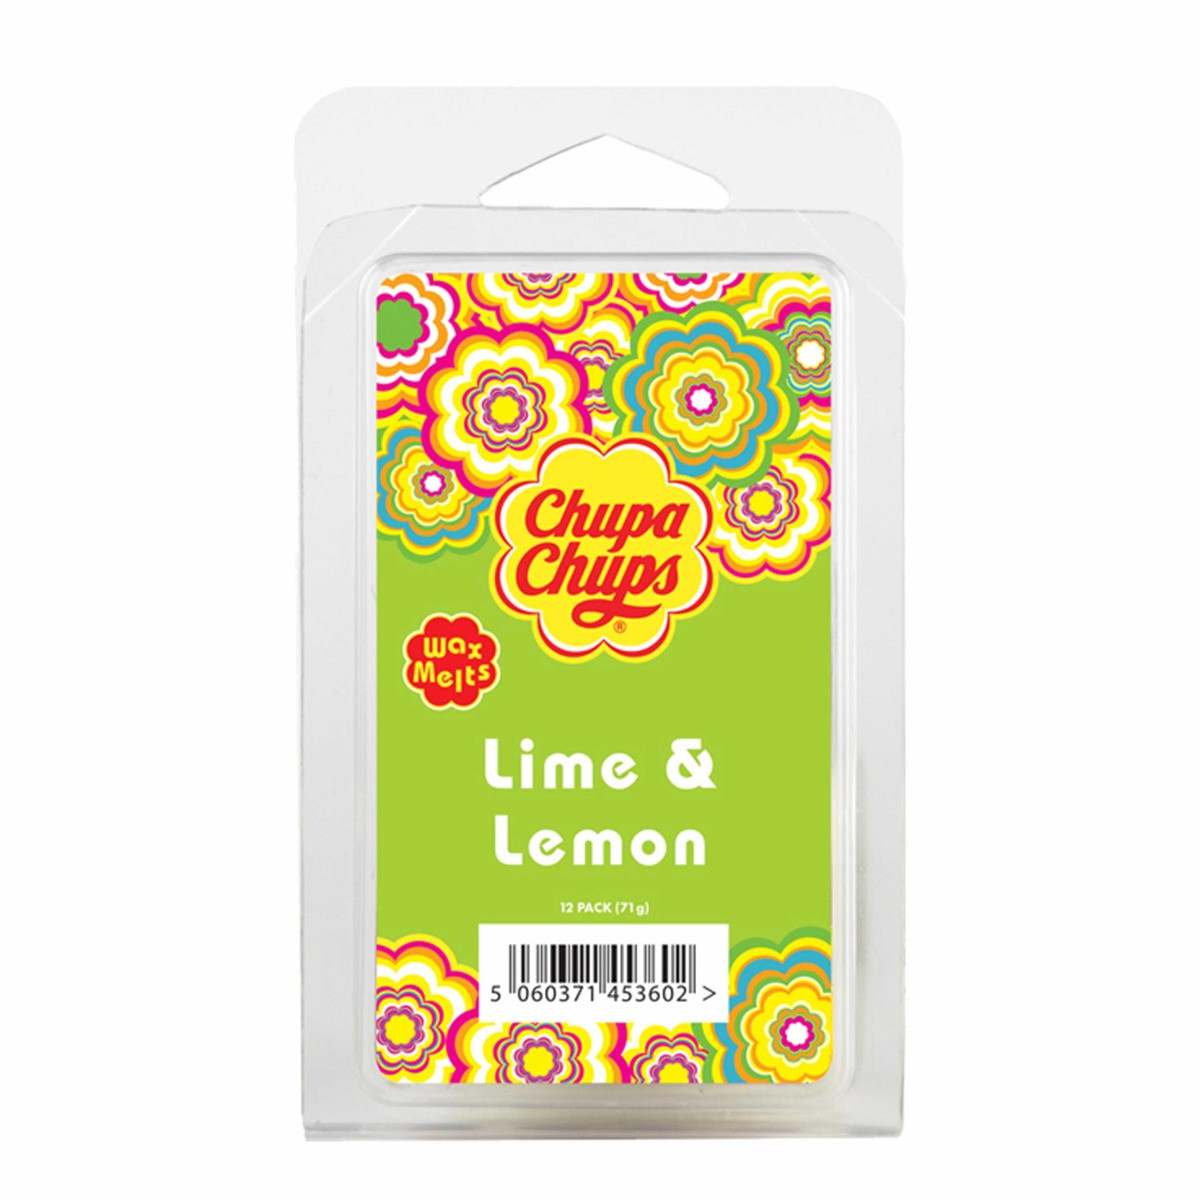 Chupa Chups 12 Pack Wax Melts - Lime & Lemon>